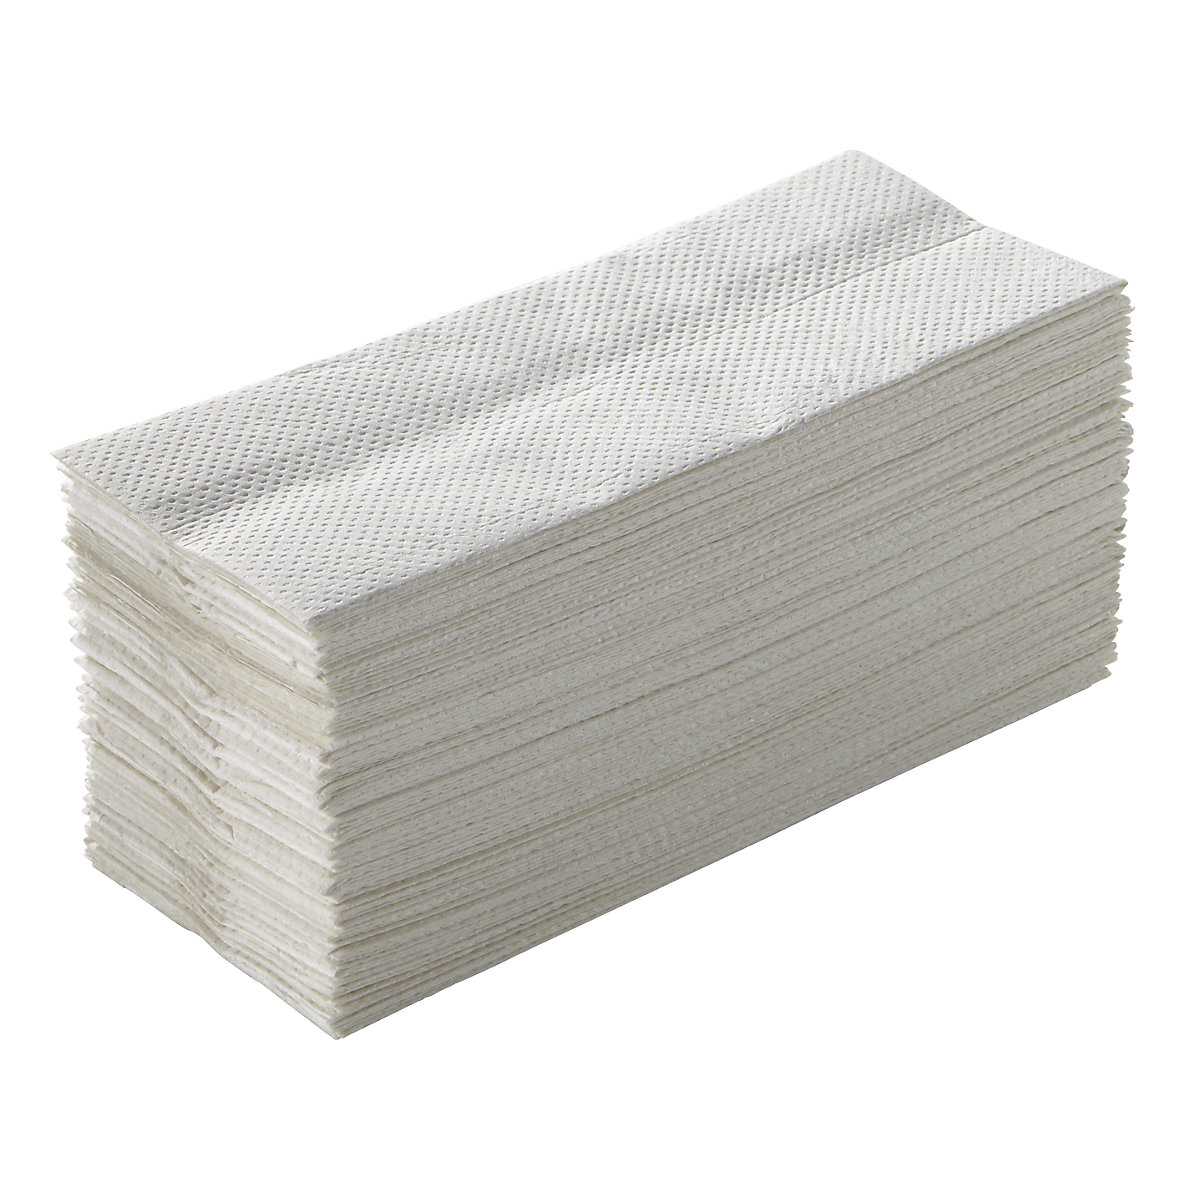 TORK – Salviettine ripiegate, carta seta, bianco naturale, conf. da 3750 salviettine, a partire da 4 conf.